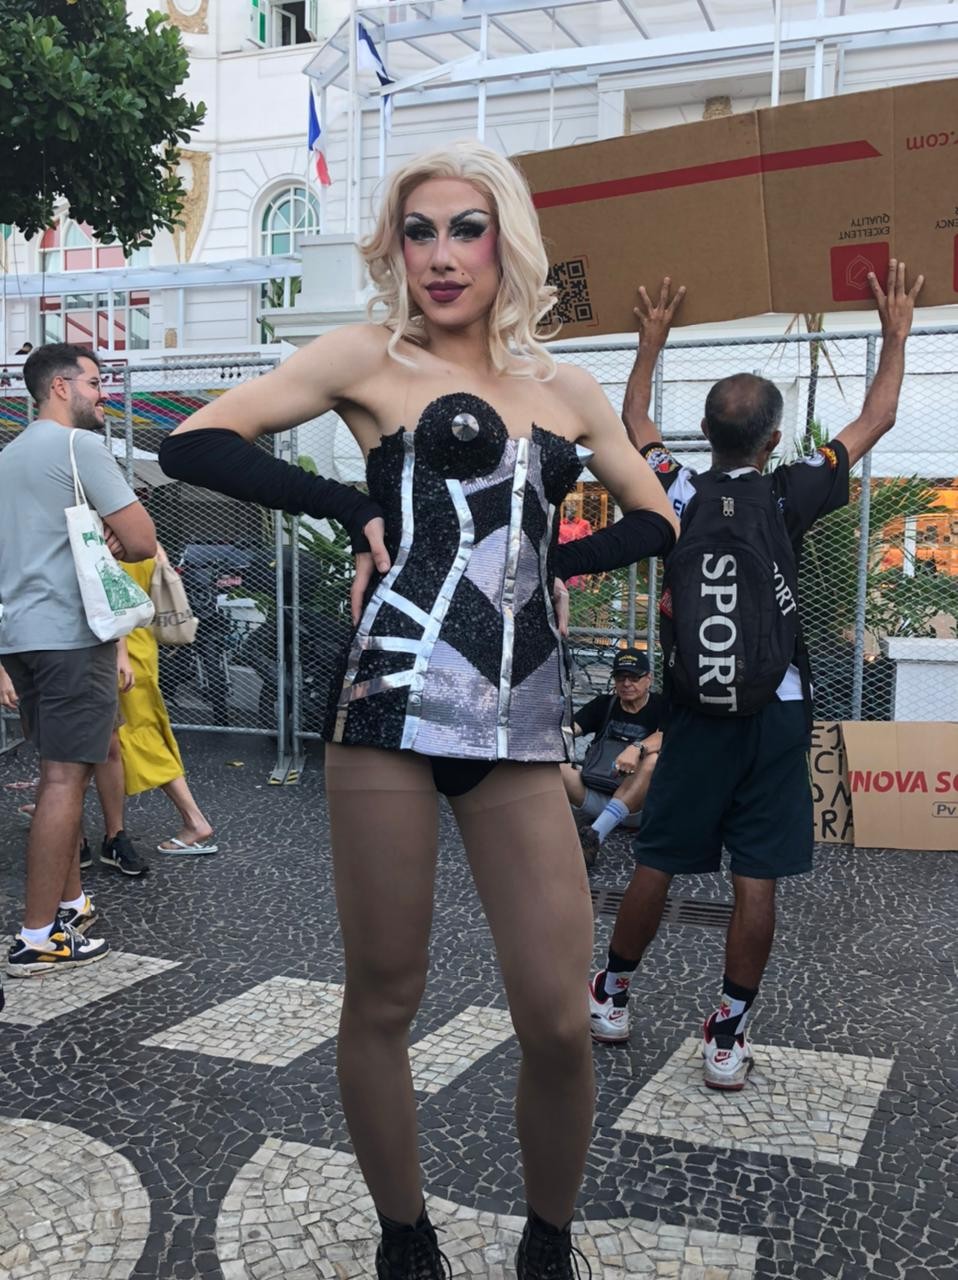 Vestidos à la Madonna, fãs lotam calçada do Copacabana Palace na esperança de ver a rainha do pop